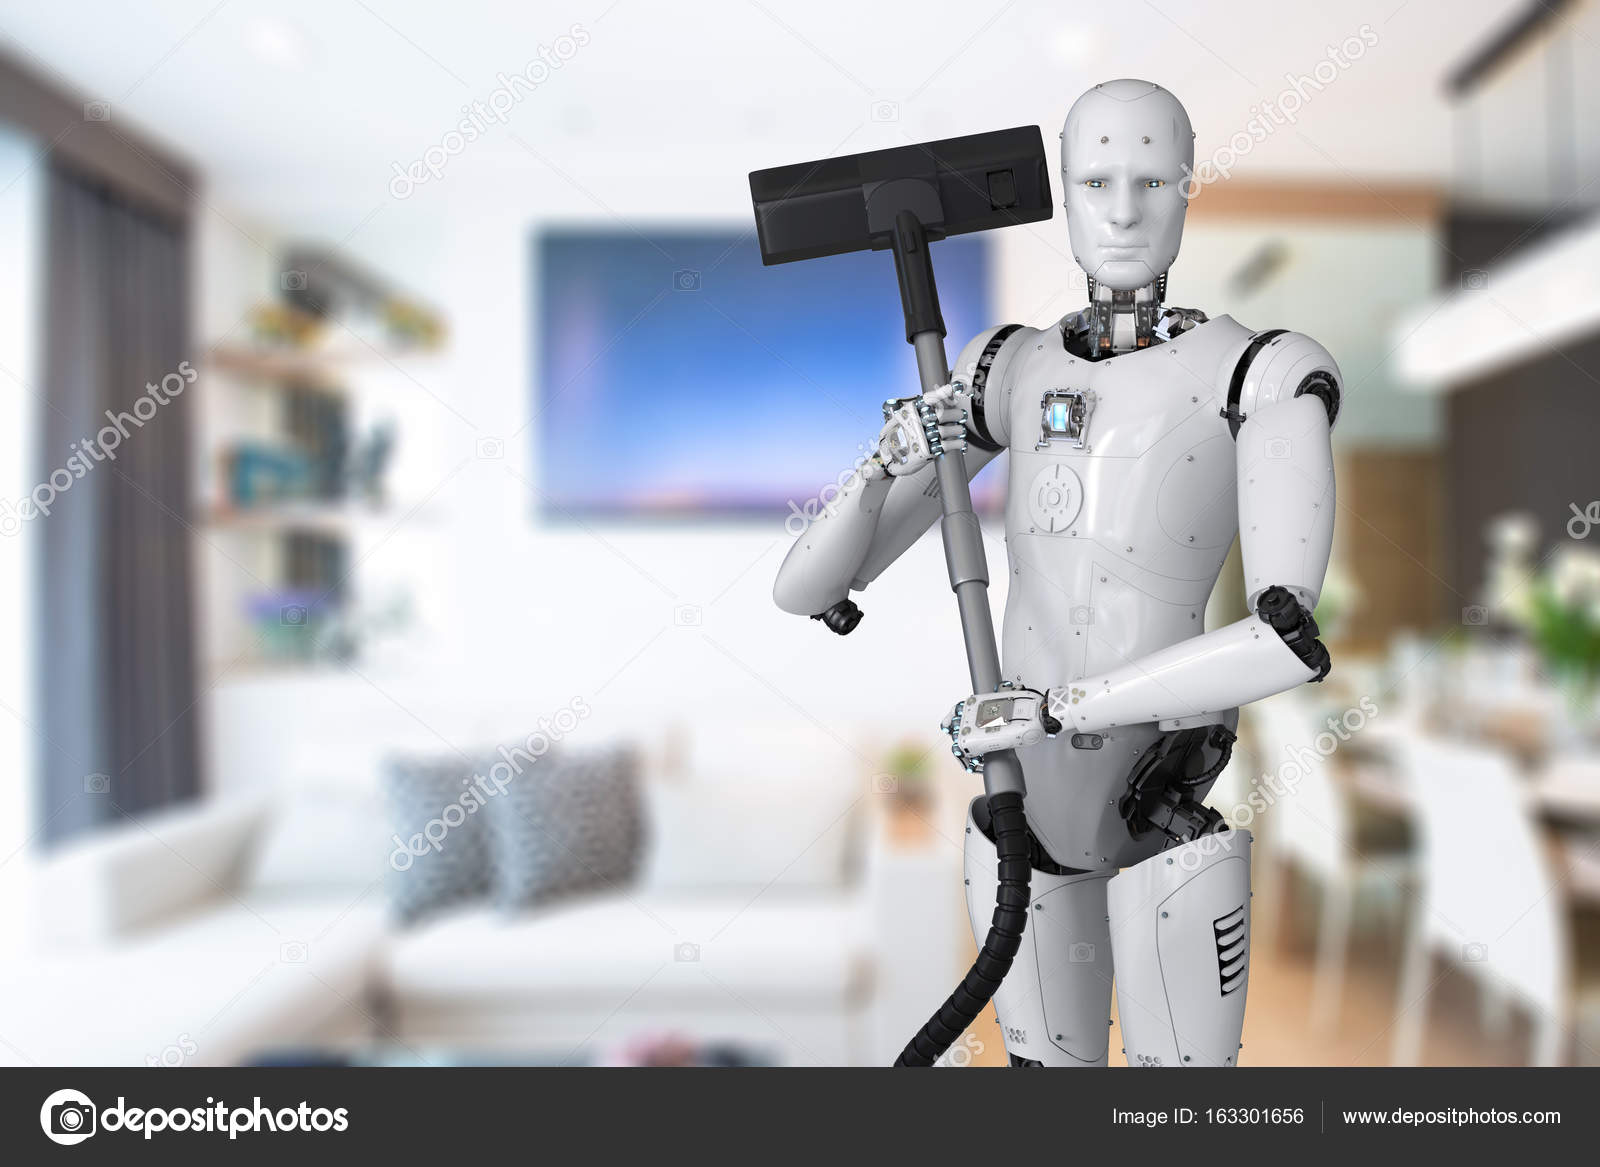 Запусти уборку роботом. Роботы исследователи. Бытовые роботы. Робот уборщик будущего. Робот помощник по дому.